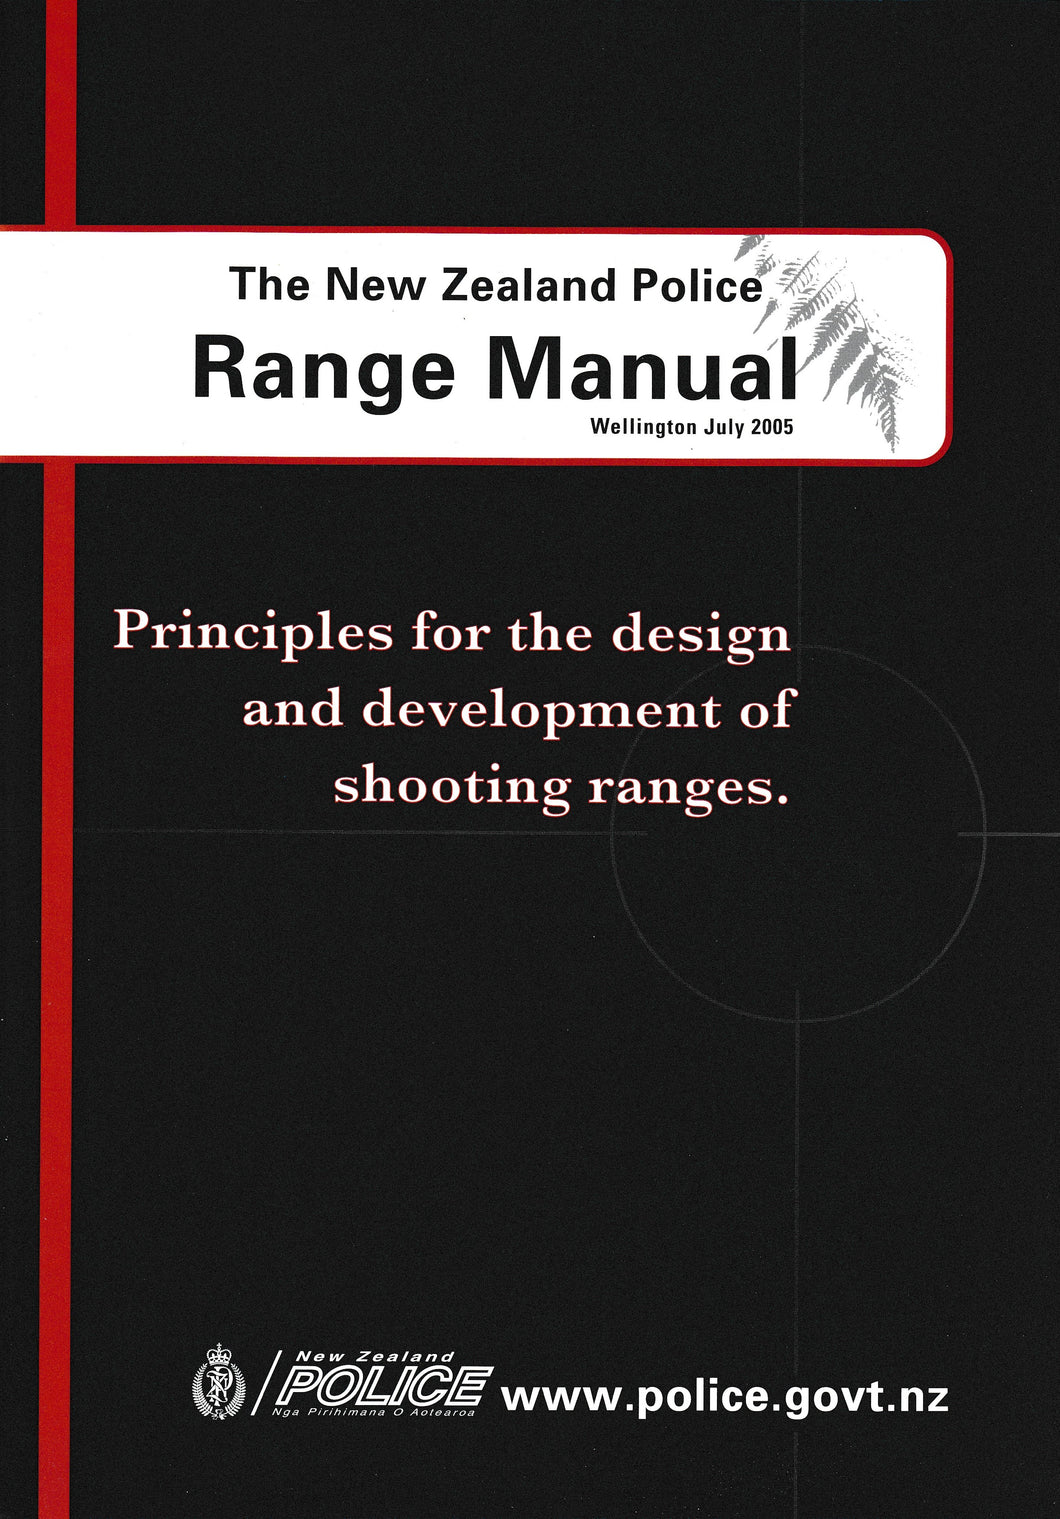 The NZ Police Range Manual 2005 | Police